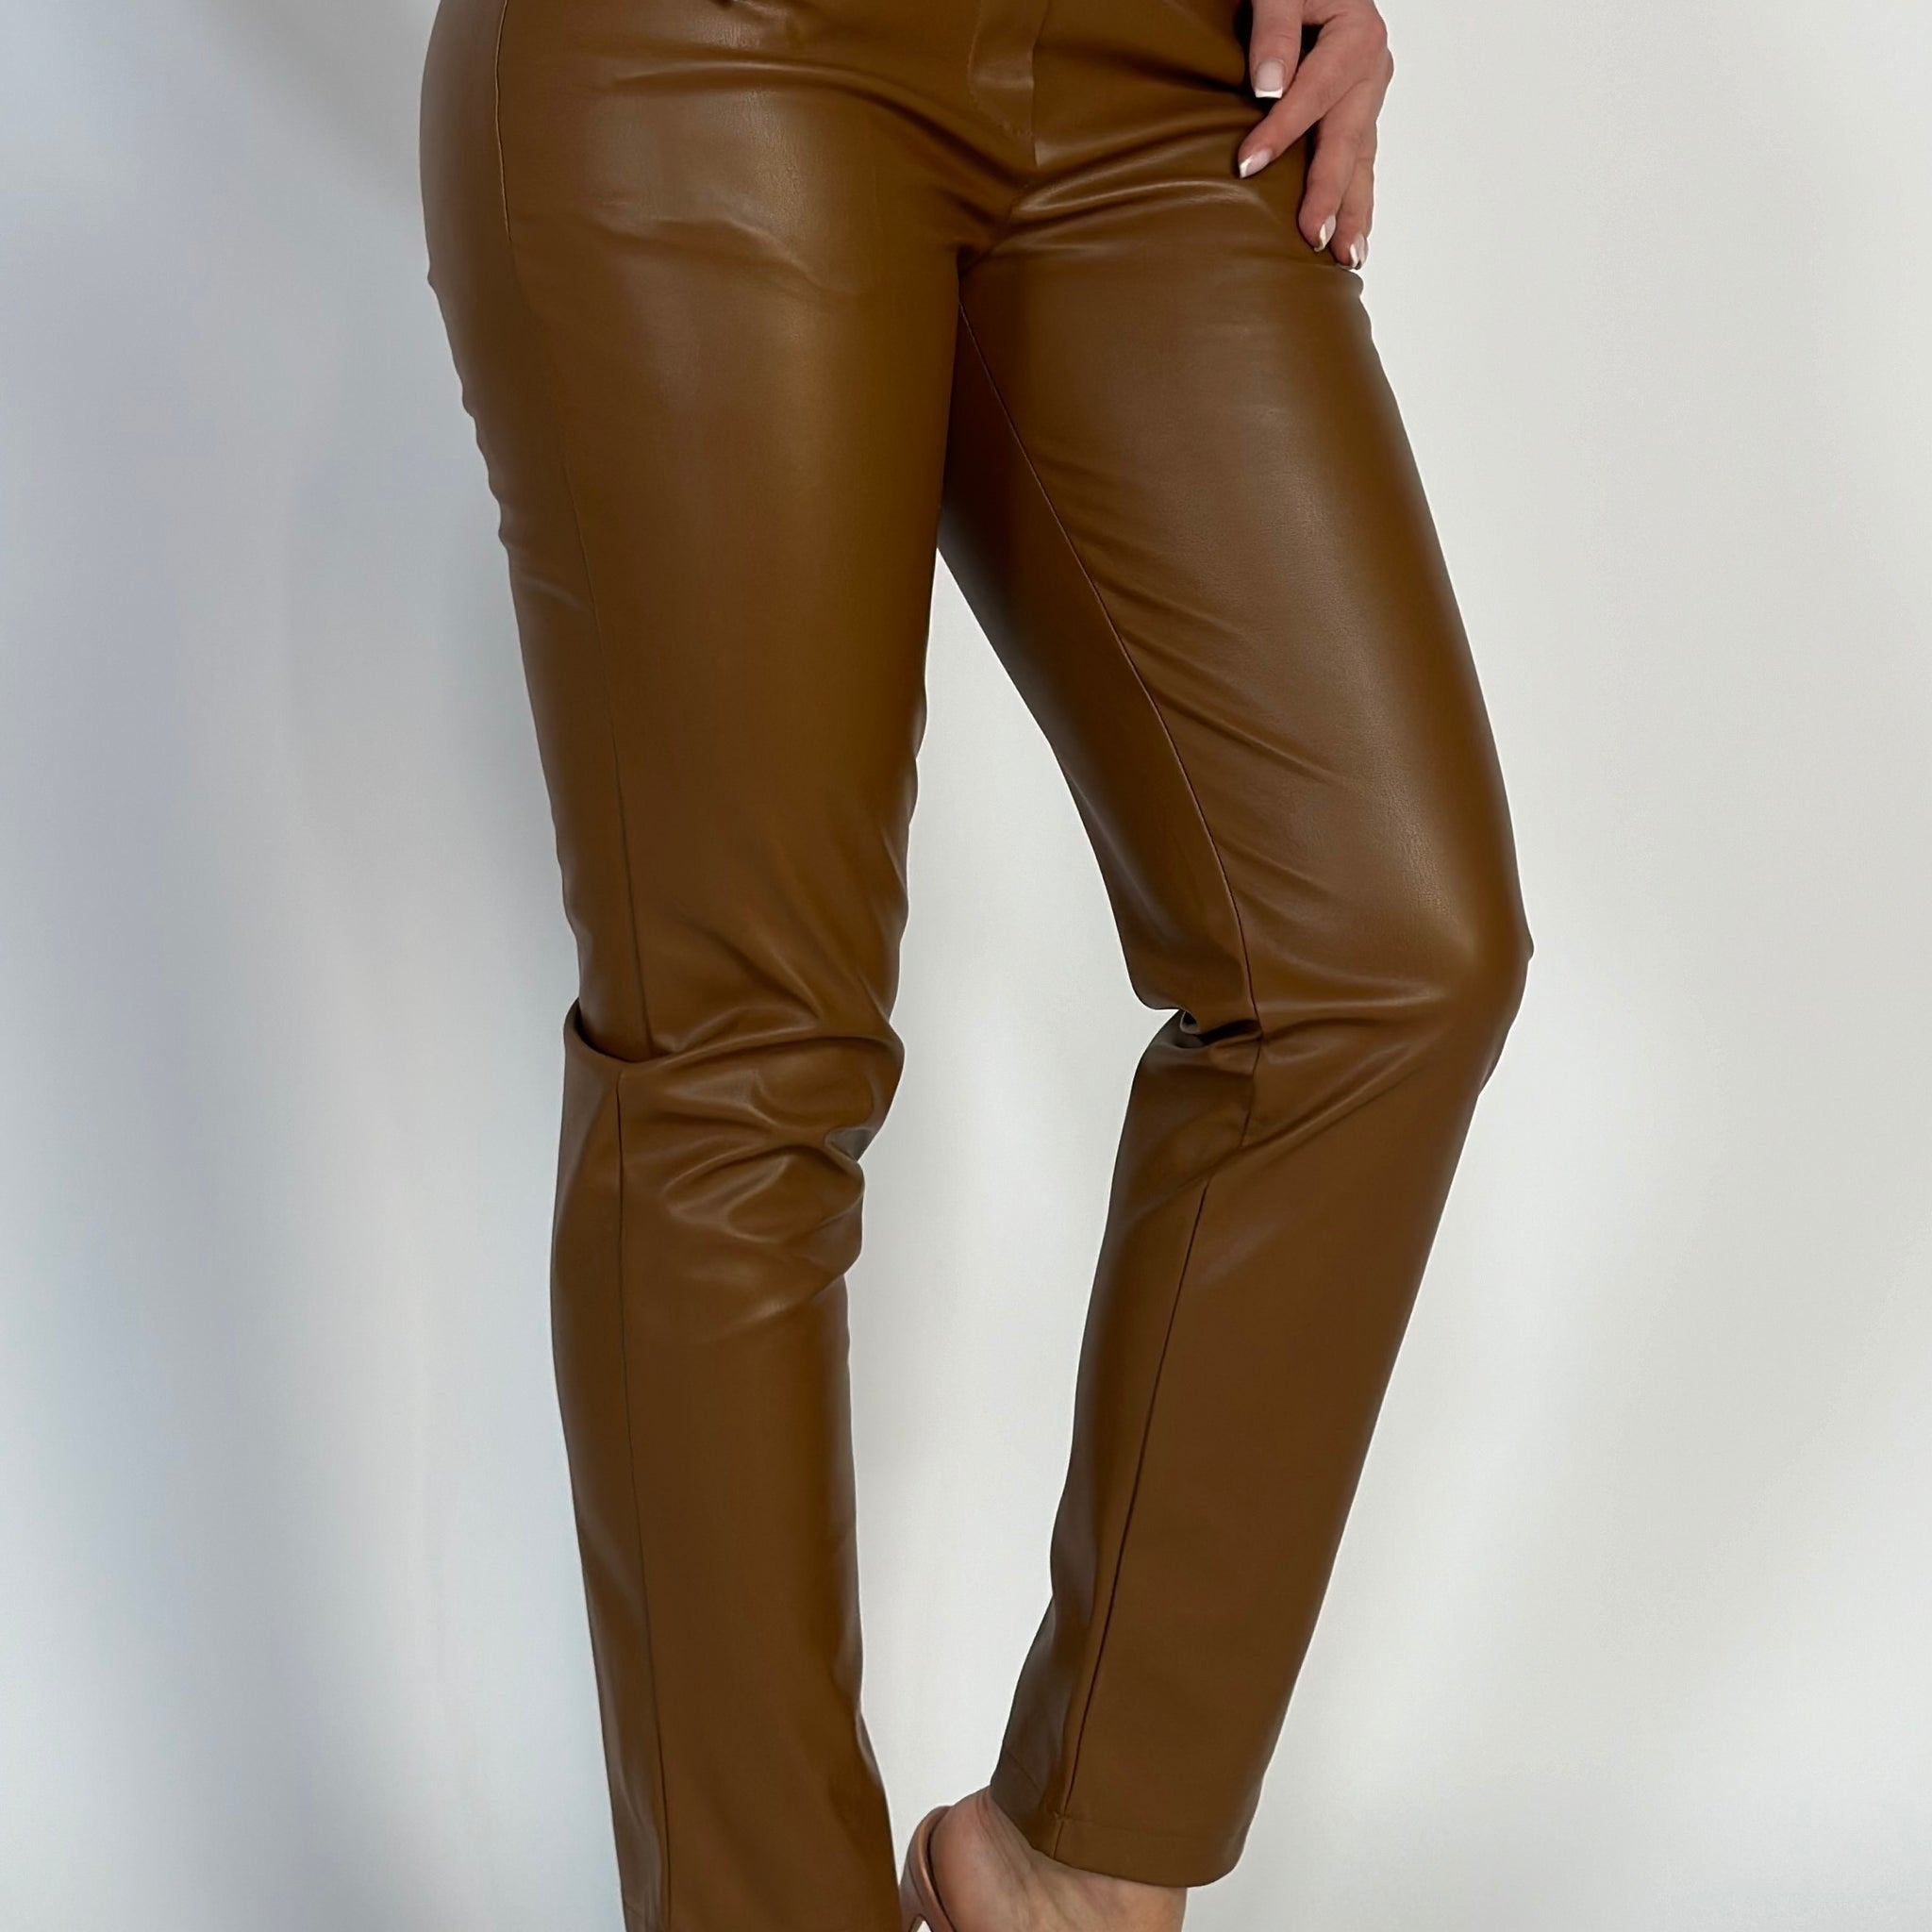 Pantaloni fashion cu talie inalta model skinny din piele ecologica V649-8